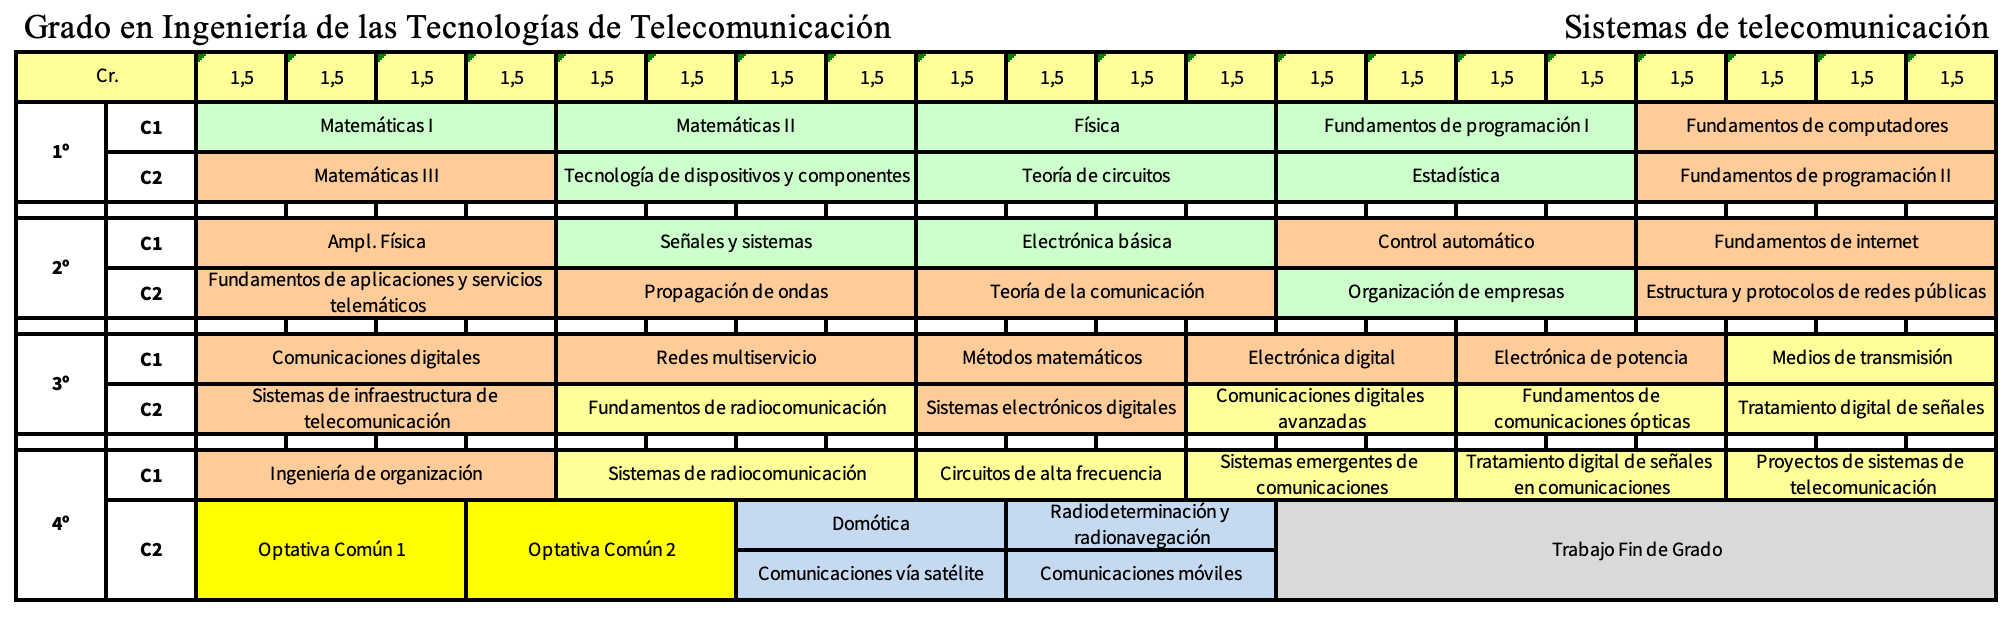 Grado en Ingeniería de las tecnologías de Telecomunicación - Mención en Sistemas de Telecomunicación   | Etsi